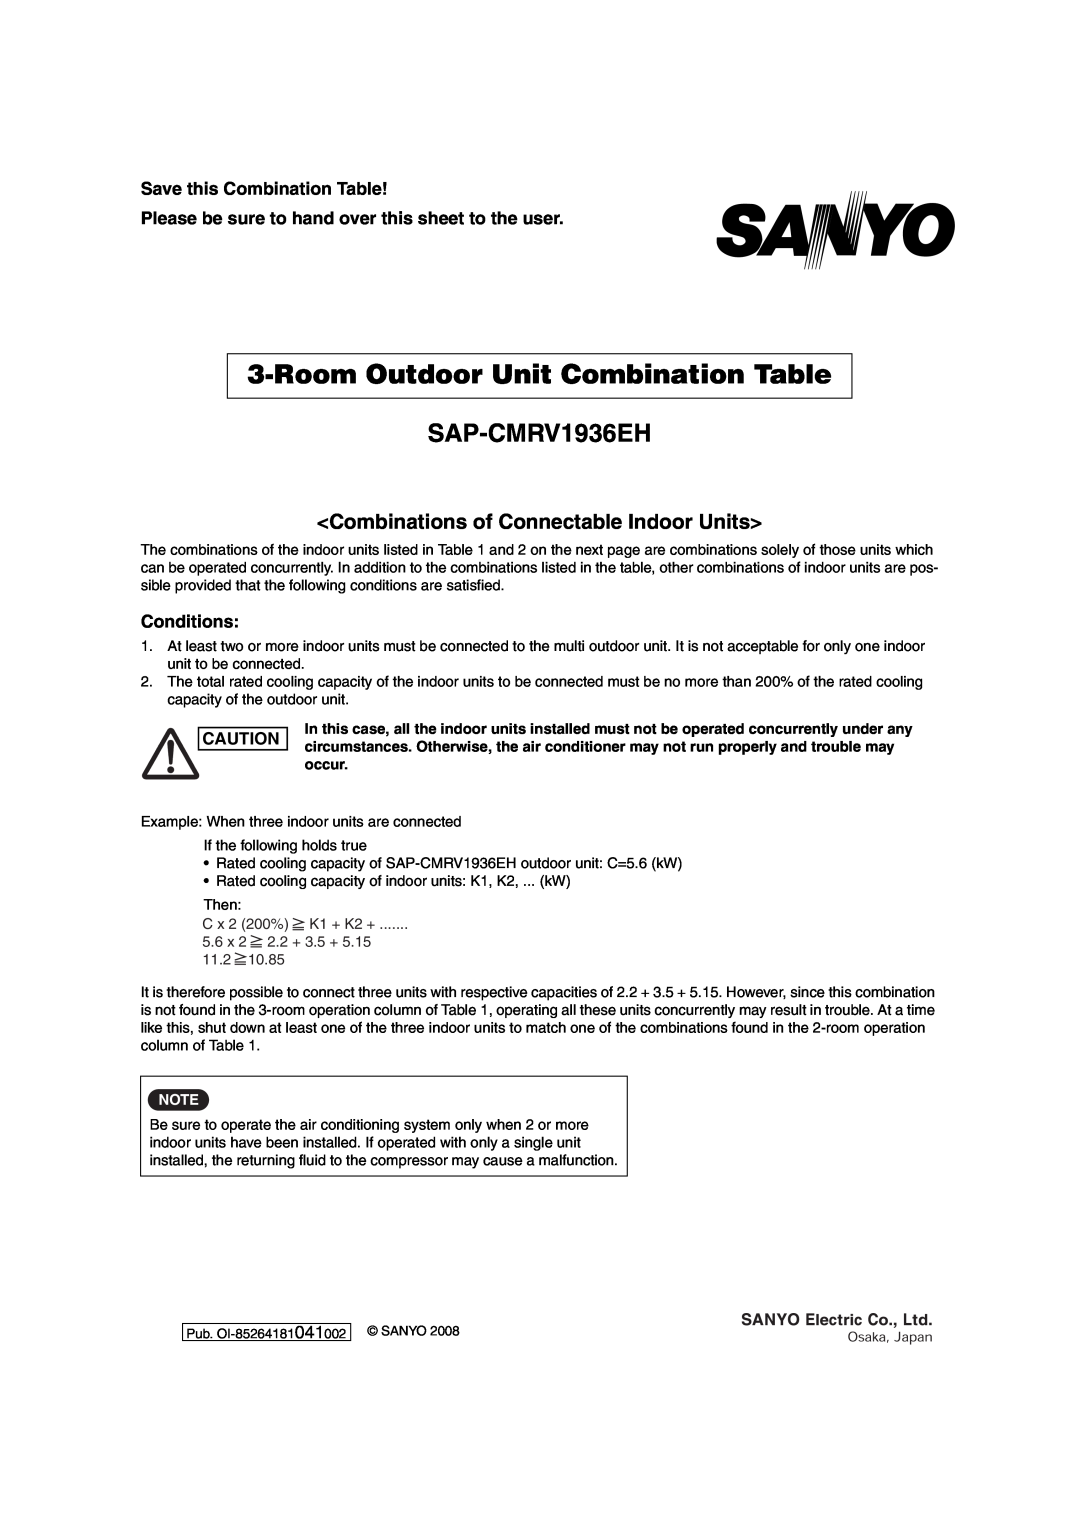 Sanyo SAP-CMRV1426EH-F RoomOutdoor Unit Combination Table, SAP-CMRV1936EH, <Combinations of Connectable Indoor Units> 